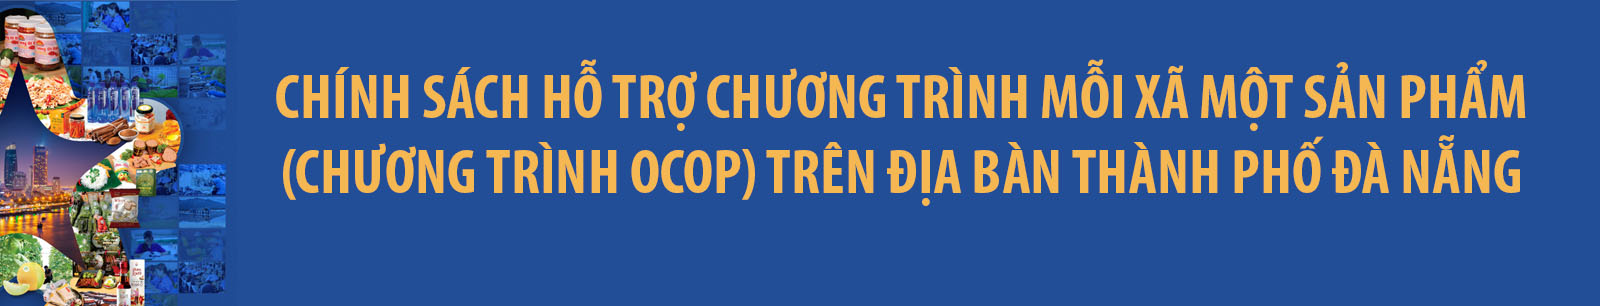 Cac Van Ban Lien Quan Chuong Trinh Ocop Tren Dia Ban Thanh Pho Da Nang